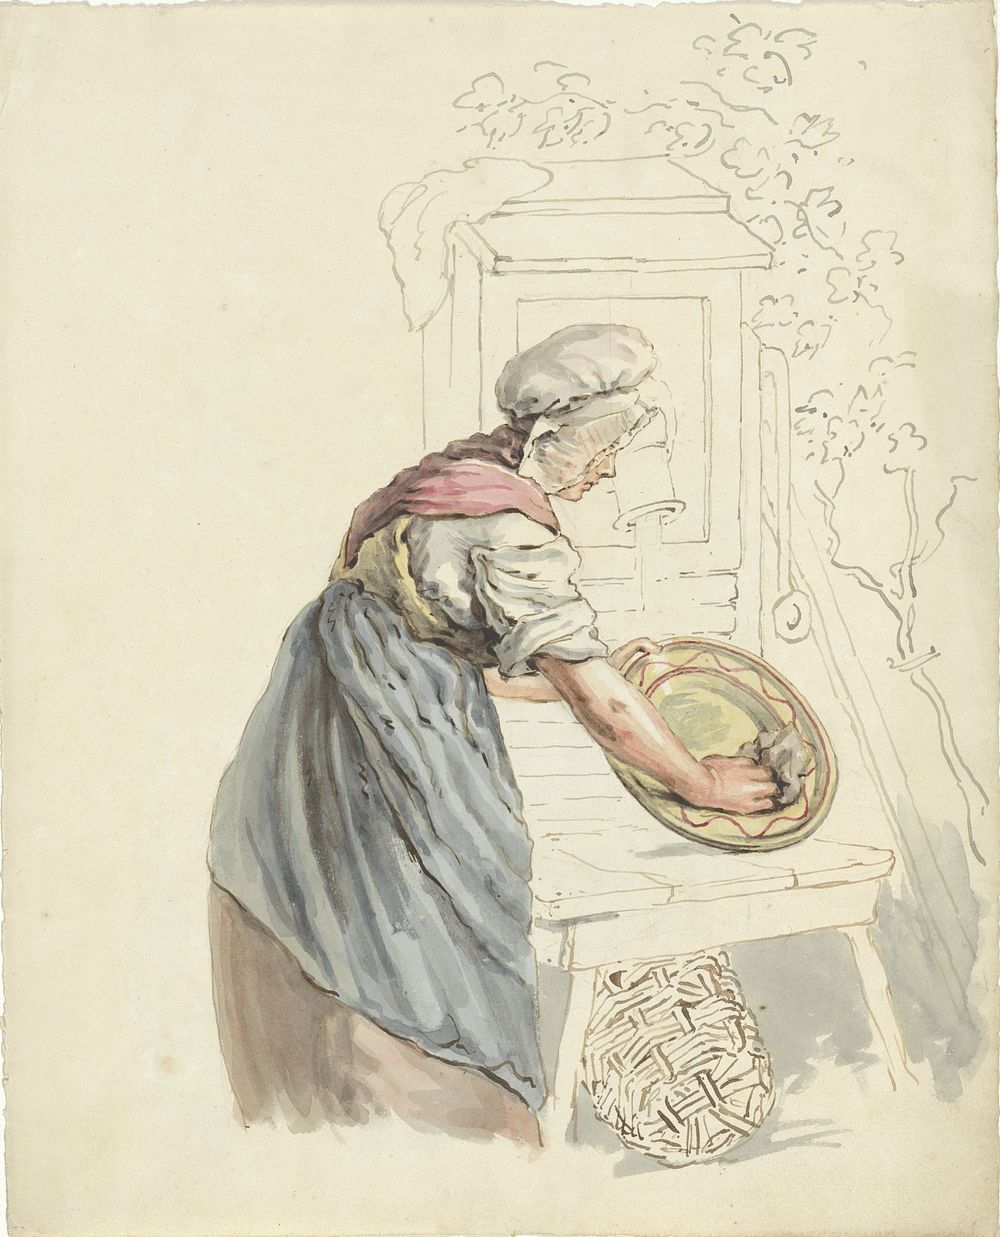 Dienstmeid die bij een waterpomp een schaal afwast (1811 - 1873) by Pieter van Loon